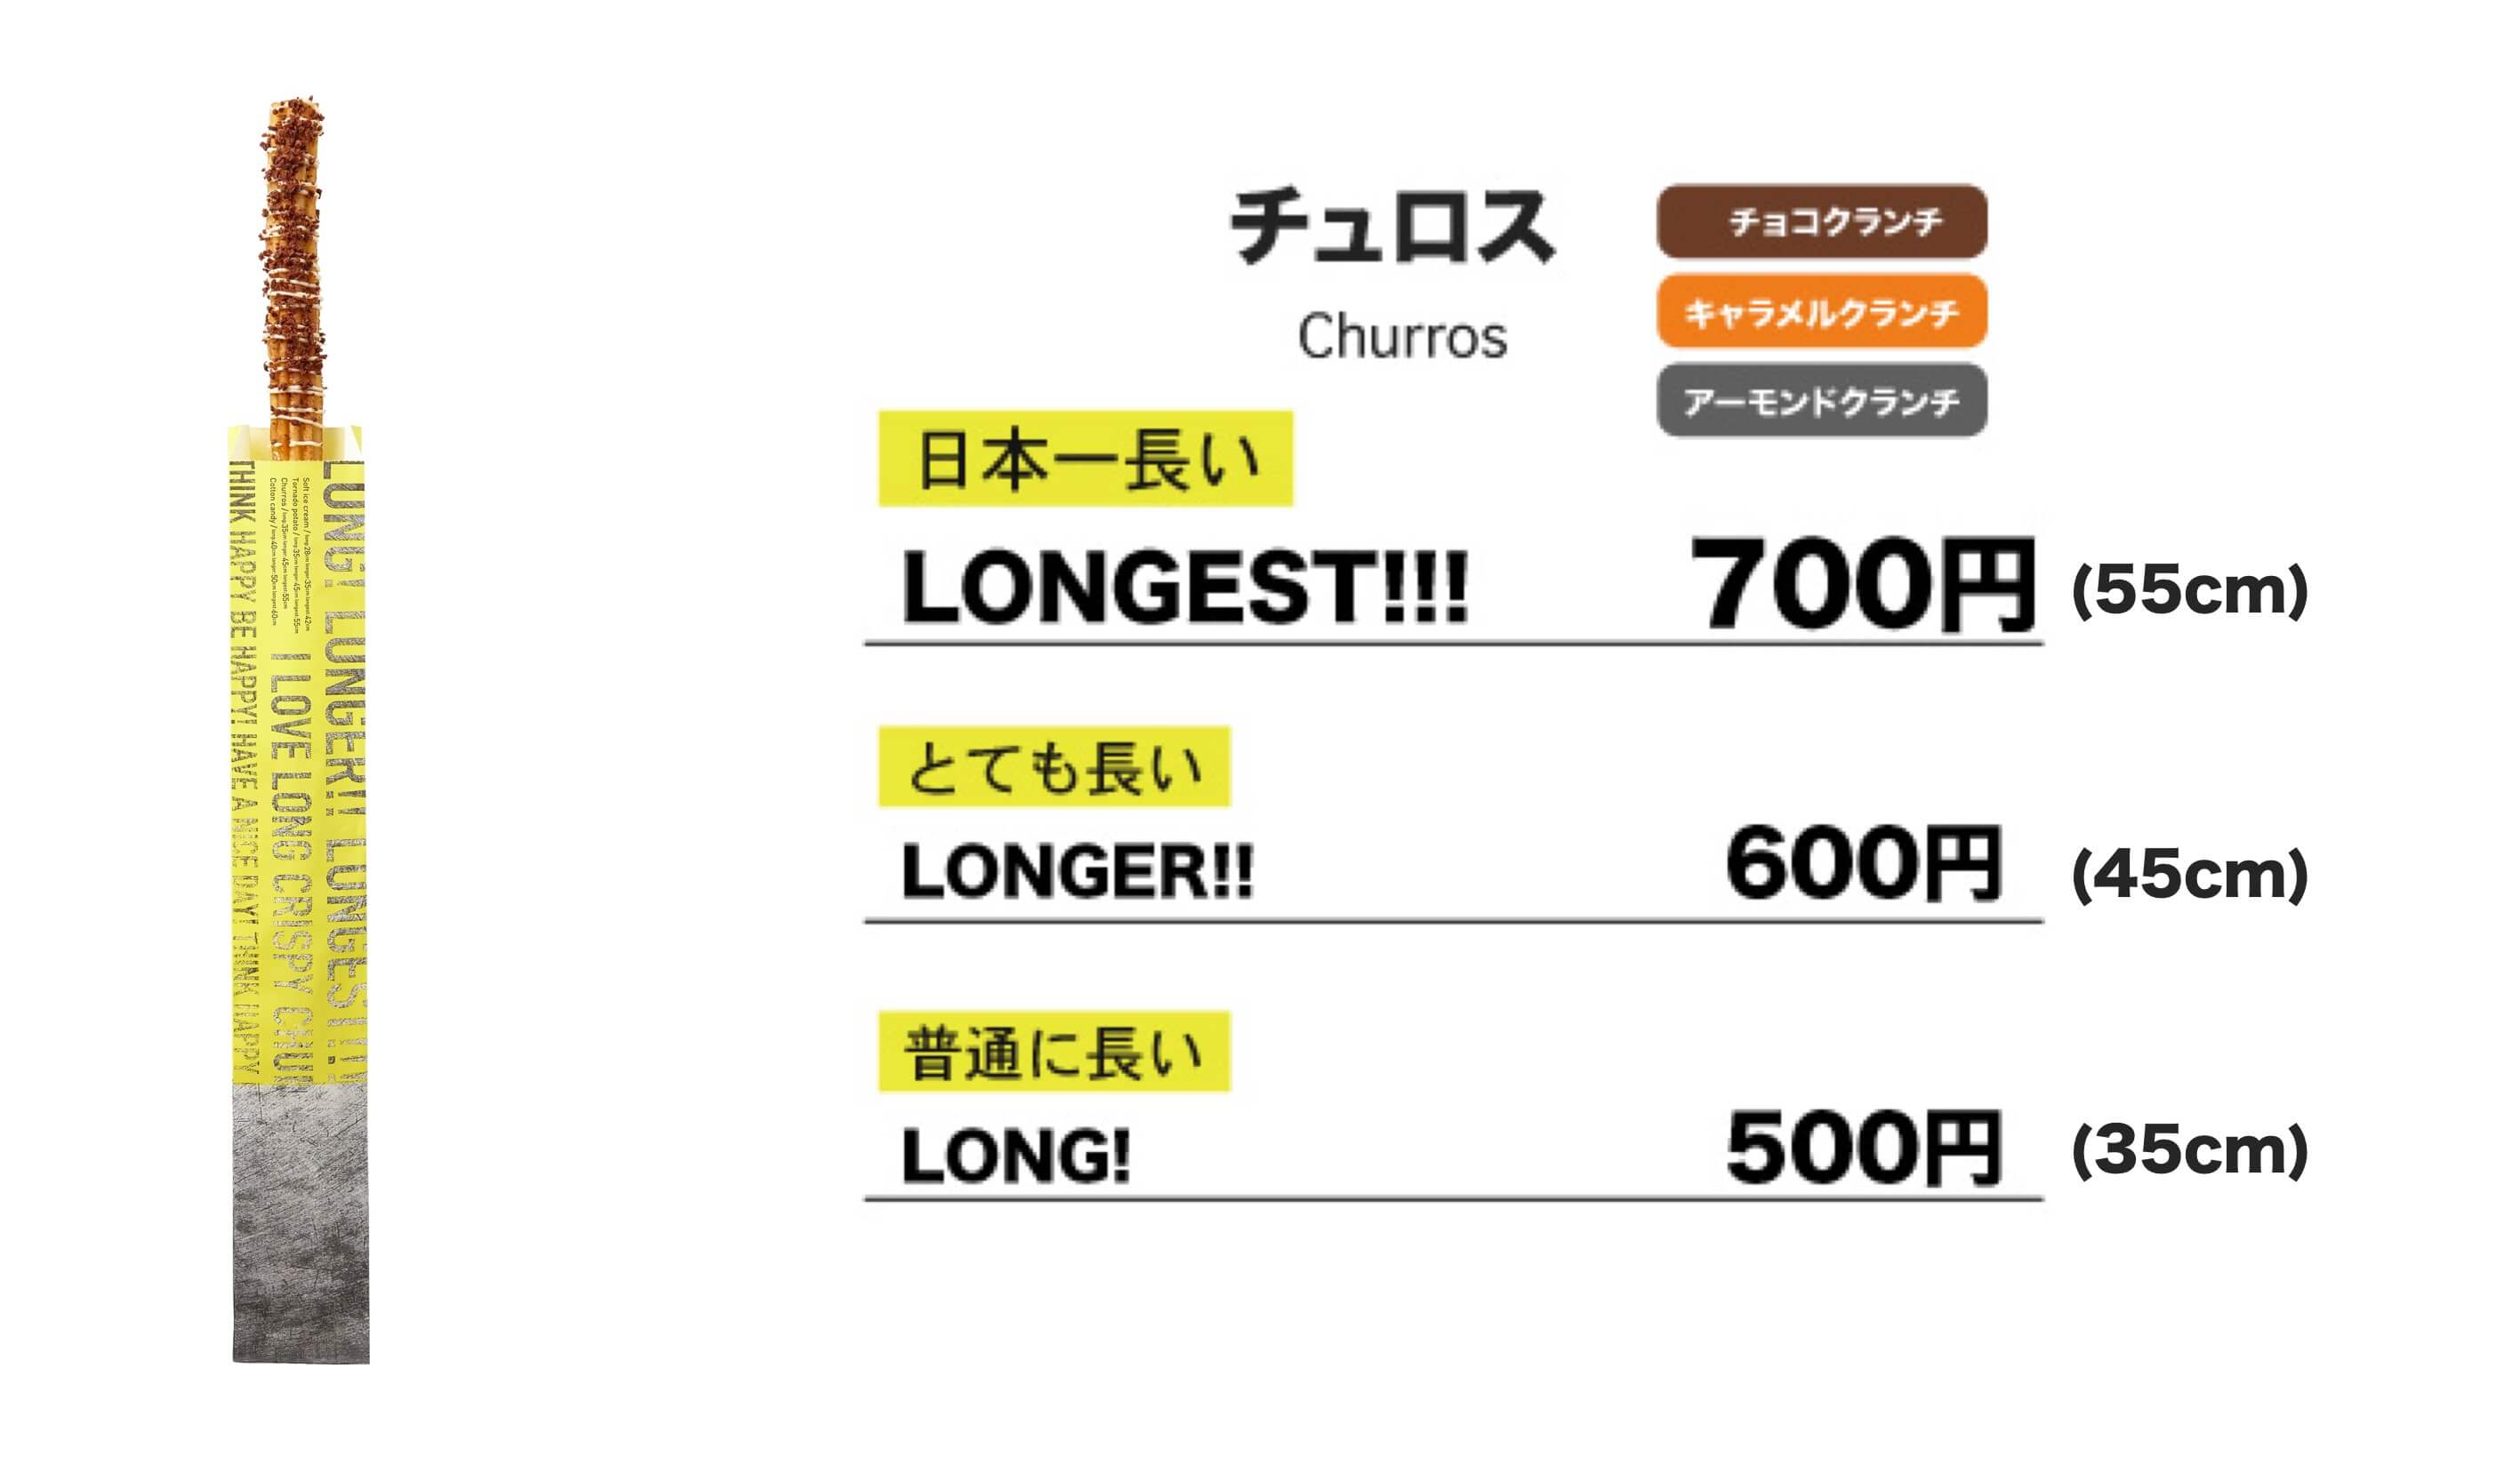 原宿 竹下通りに日本一長いフード スイーツ Long Longer Longest 登場 Moshi Moshi Nippon もしもしにっぽん